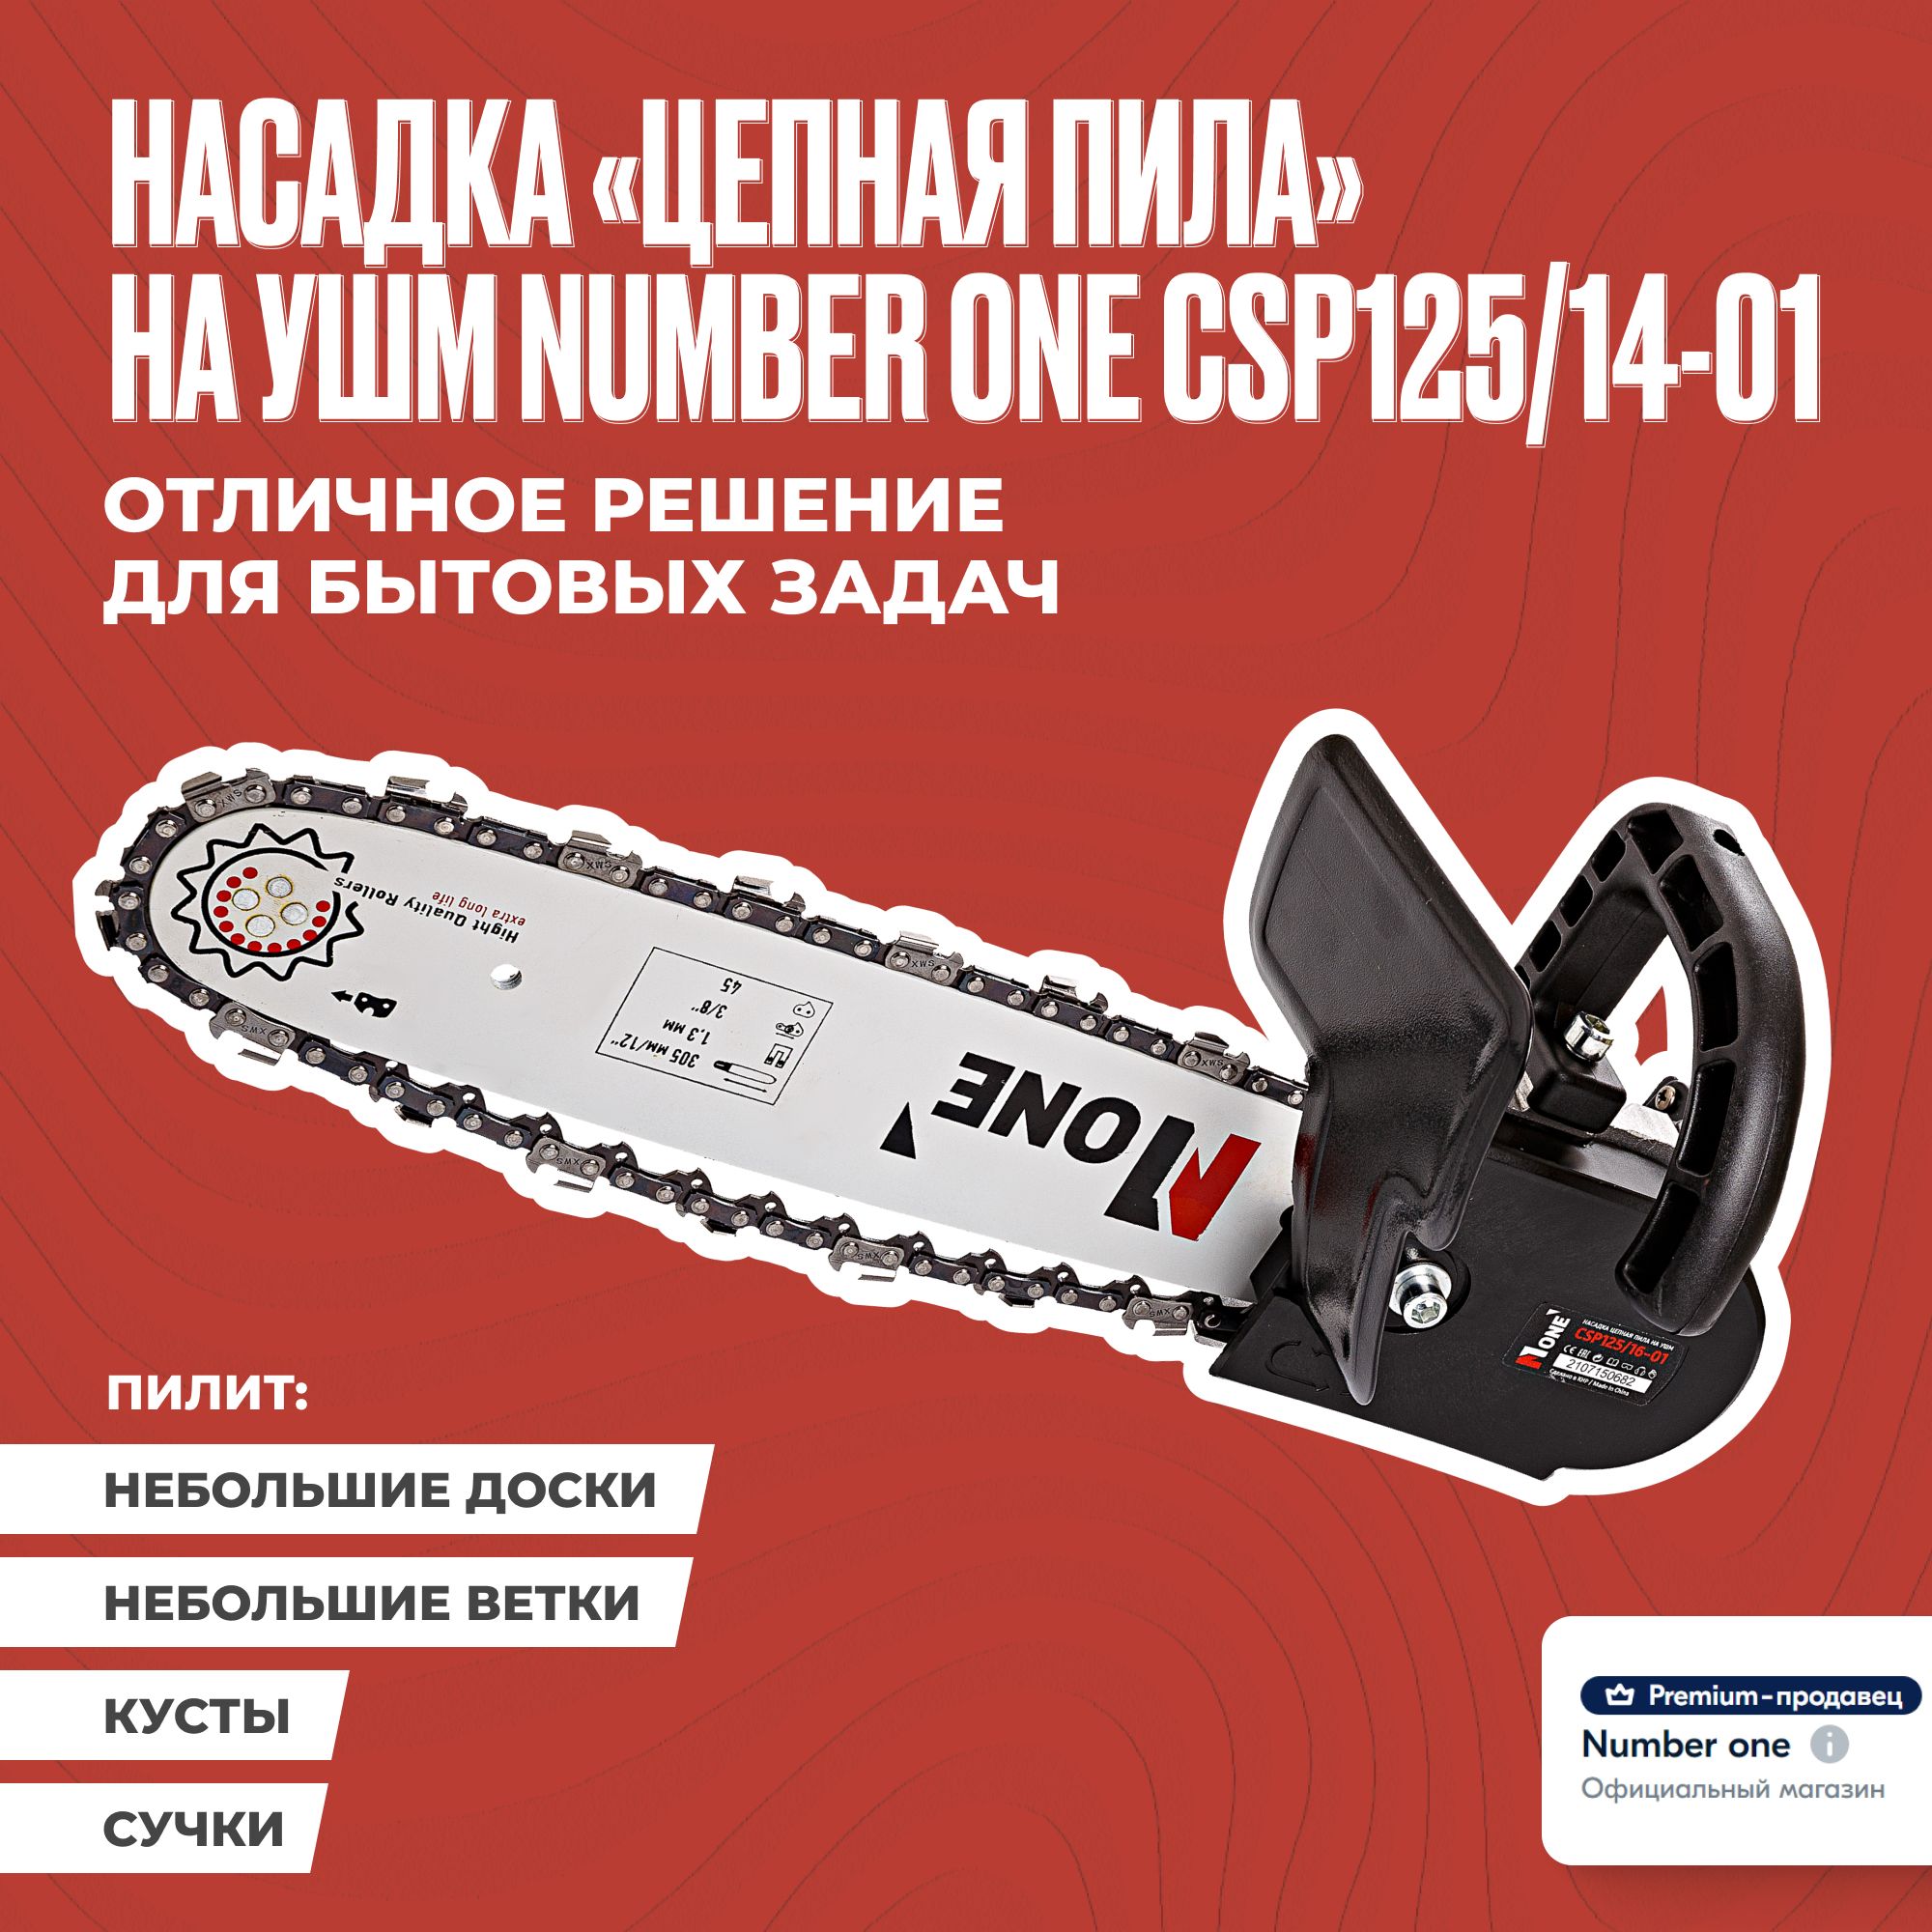 Насадка на болгарку Number One CSP125/14-01